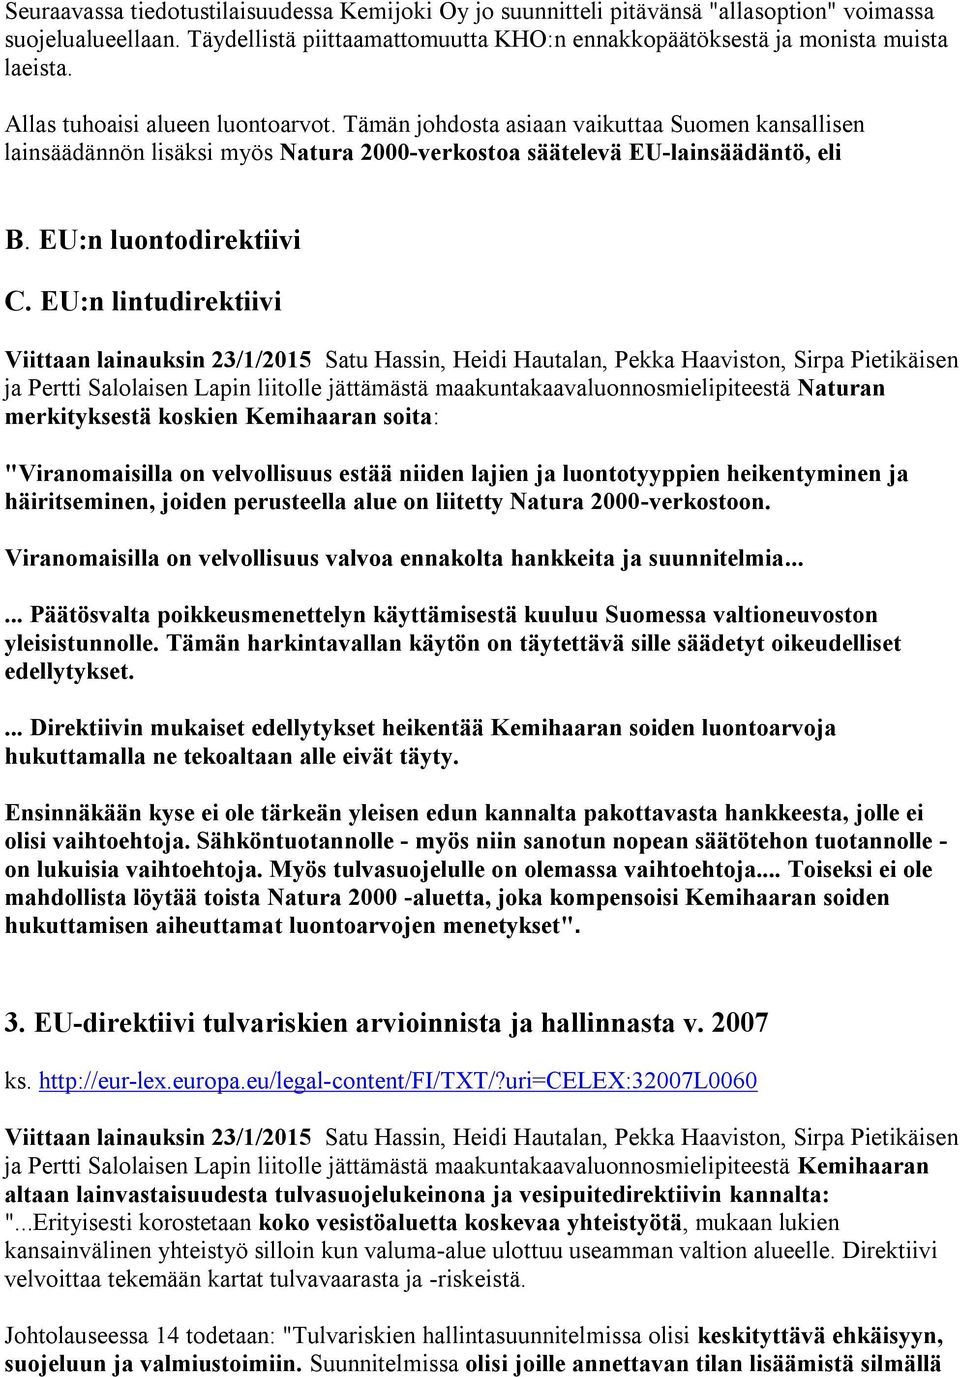 EU:n lintudirektiivi Viittaan lainauksin 23/1/2015 Satu Hassin, Heidi Hautalan, Pekka Haaviston, Sirpa Pietikäisen ja Pertti Salolaisen Lapin liitolle jättämästä maakuntakaavaluonnosmielipiteestä